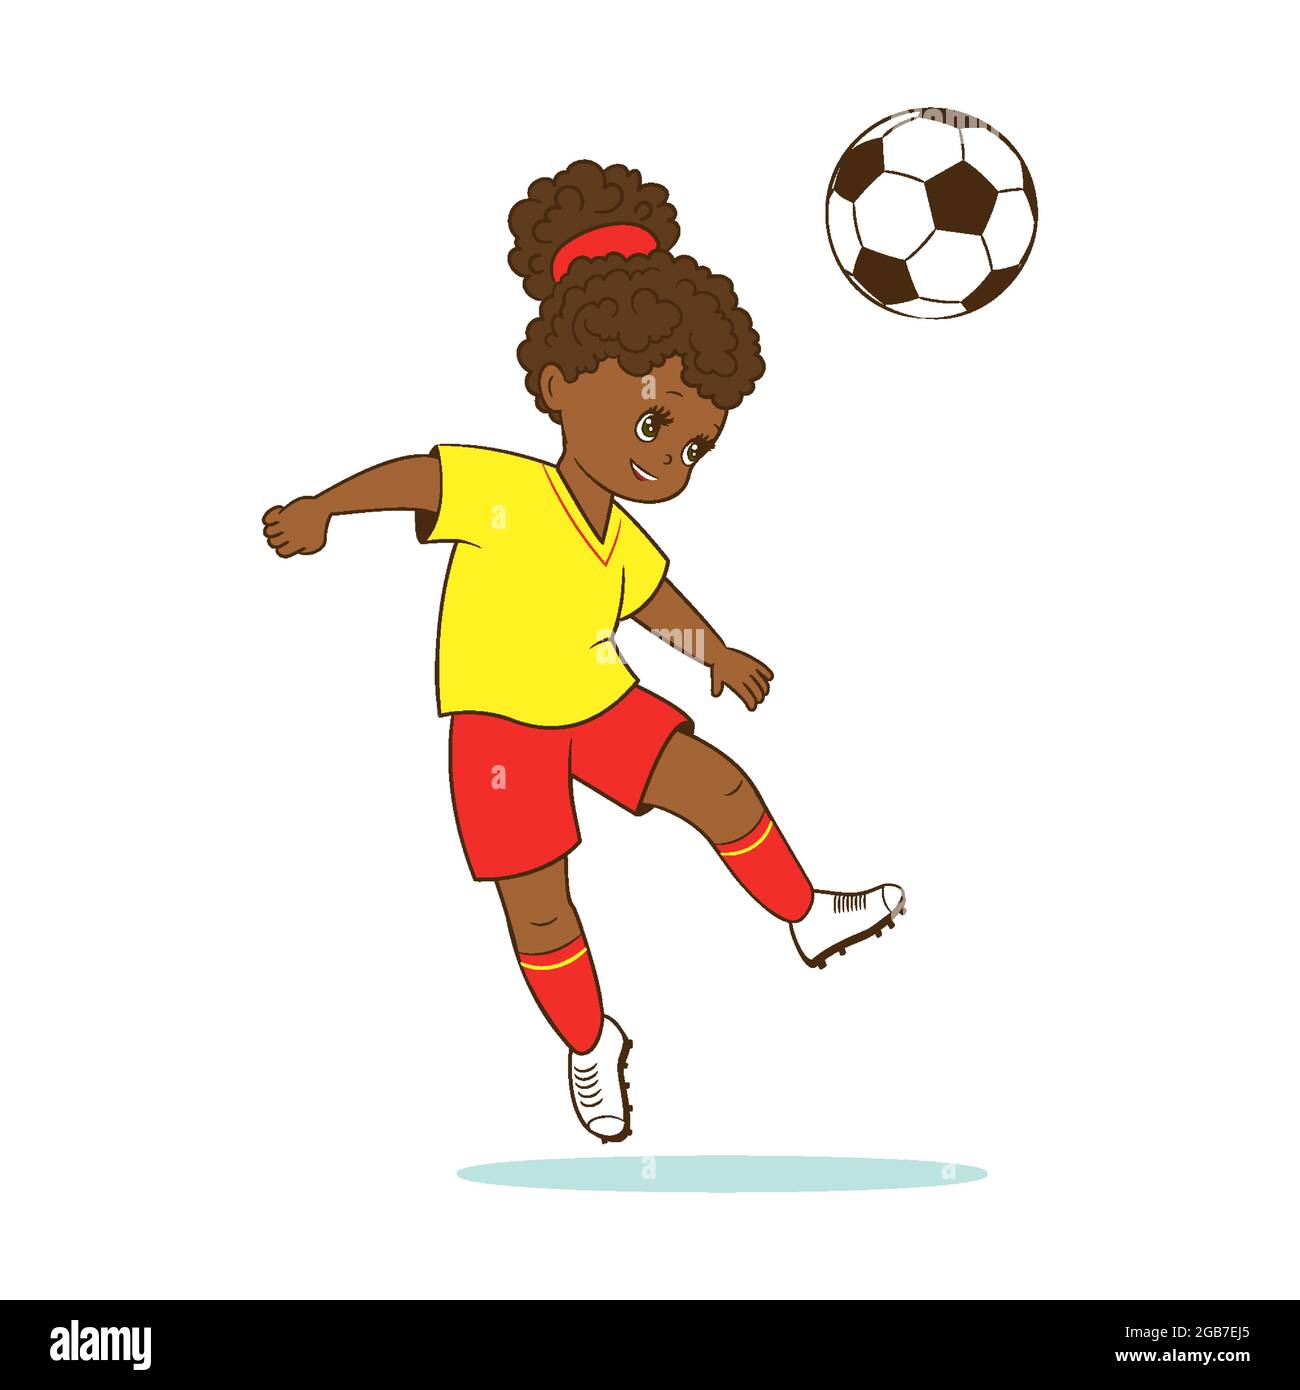 La ragazza giocatore di calcio batte la palla di calcio con la testa.  Illustrazione vettoriale in stile cartoon, comic flat Immagine e Vettoriale  - Alamy